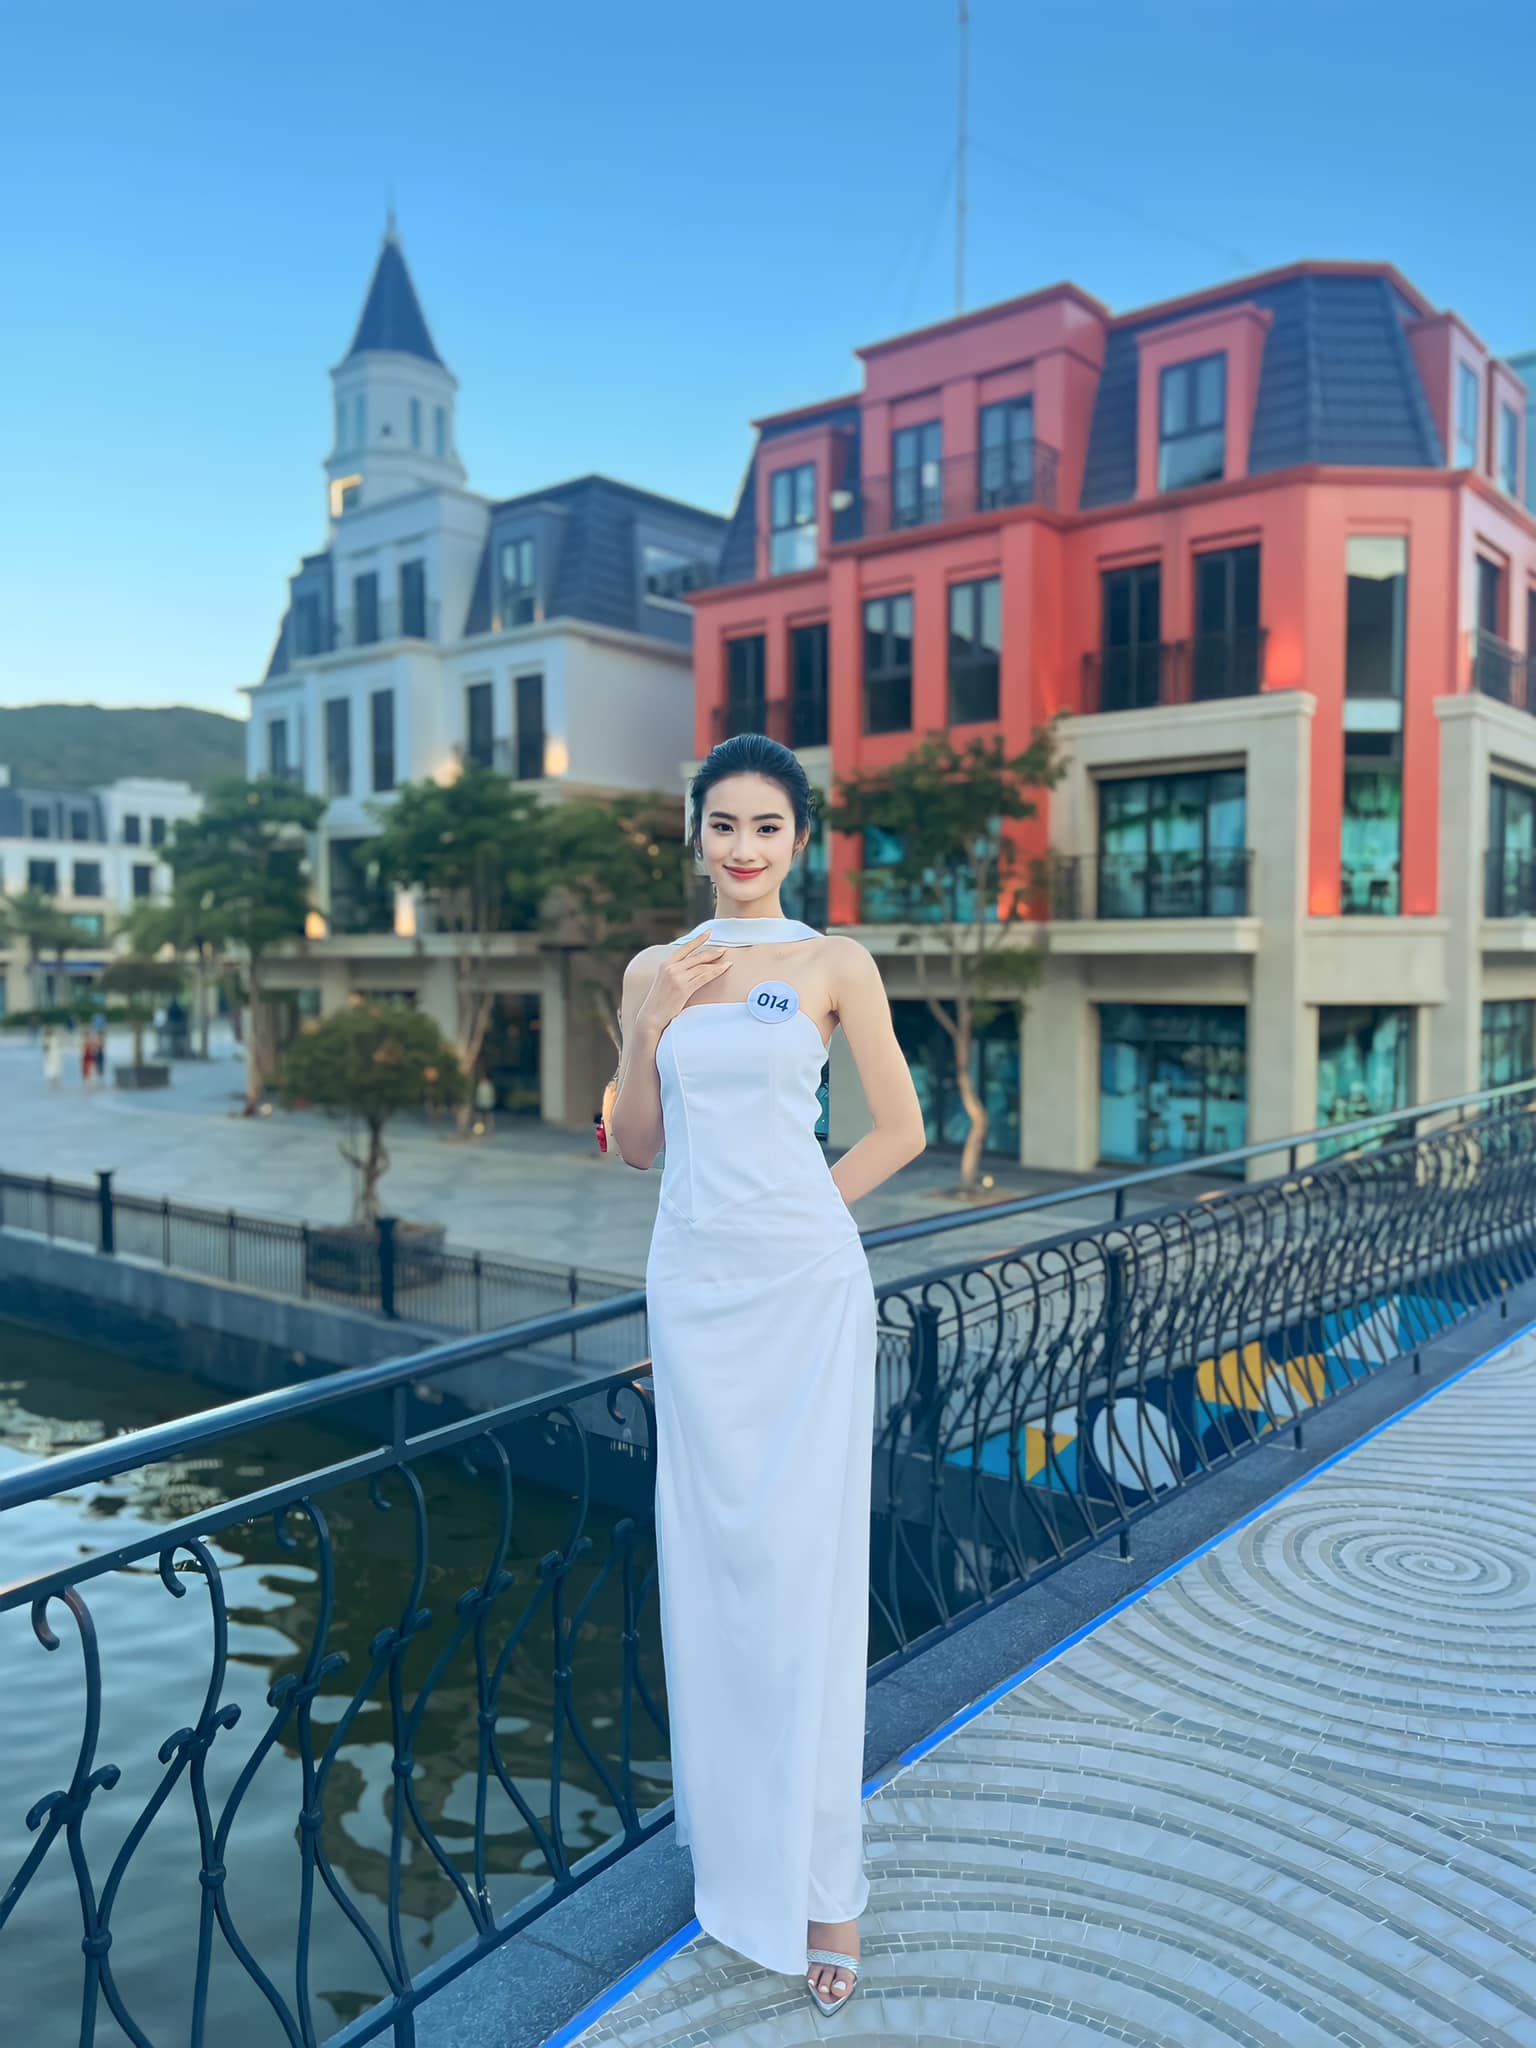 Chân dung người đẹp Bình Định vào thẳng Top 20 Miss World Vietnam 2023 - Ảnh 5.